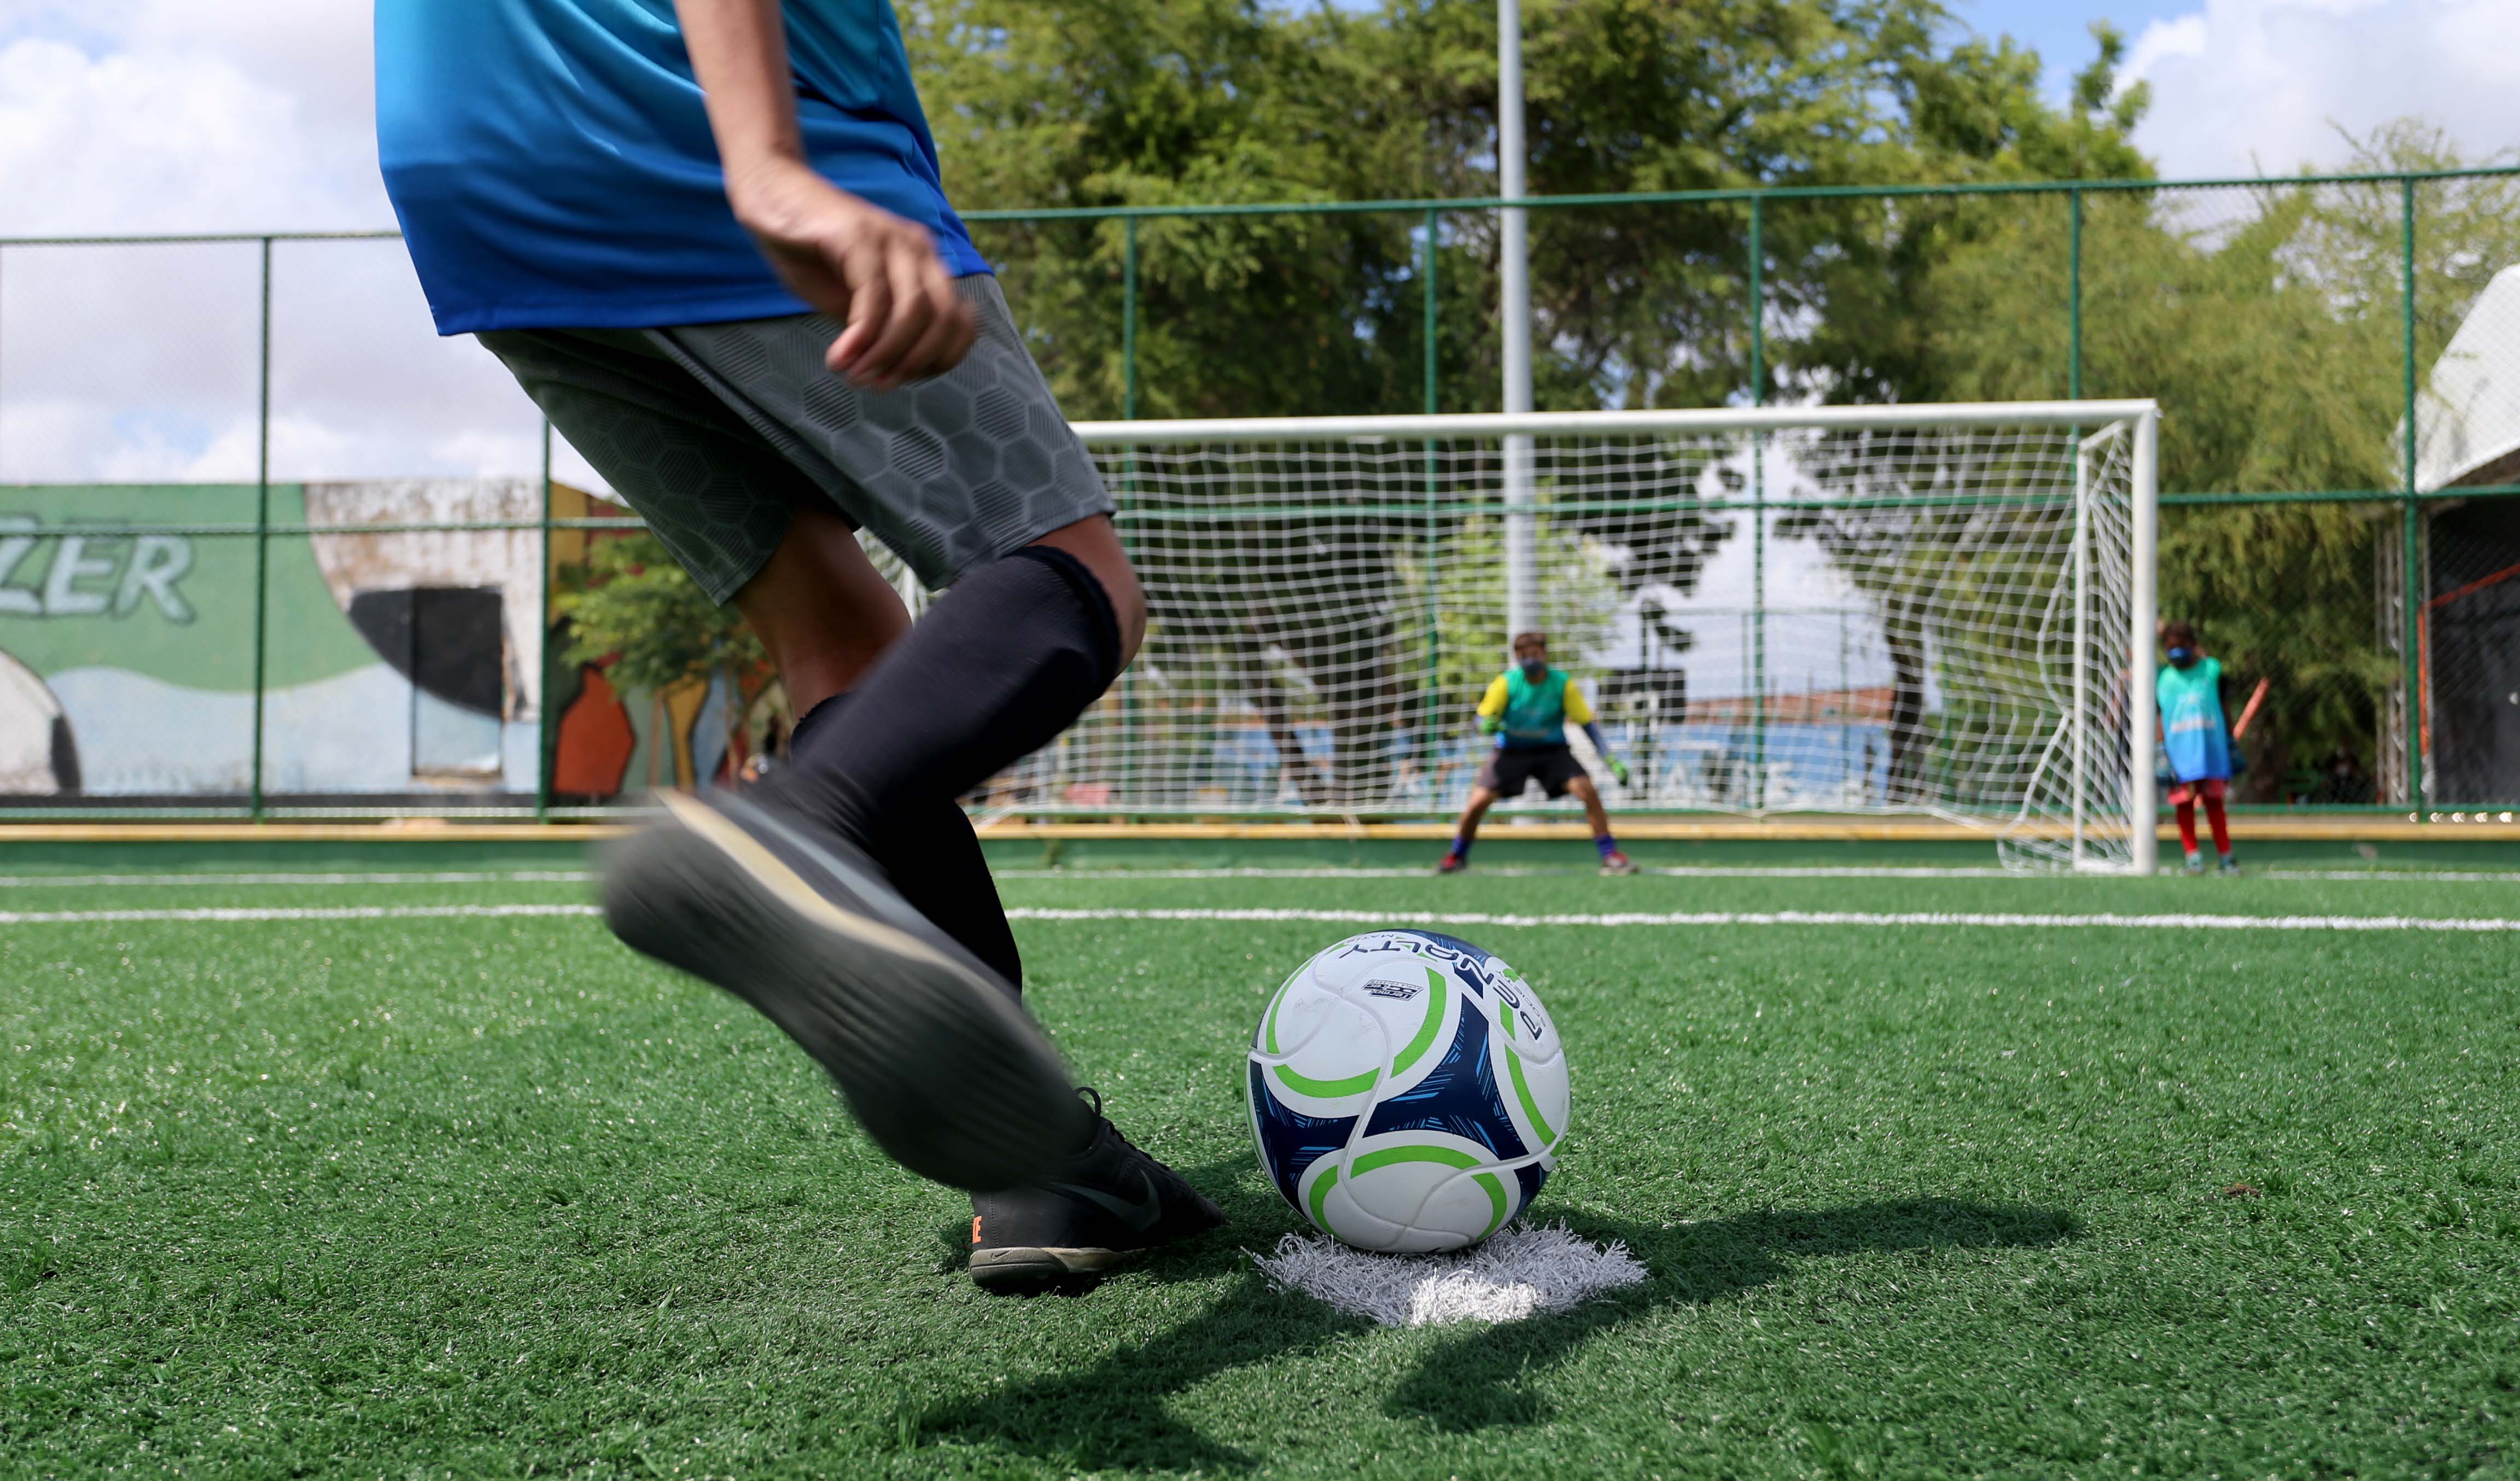 a foto mostra uma criança de costas chutando uma bola e, ao fundo, outra criança está no gol esperando para defender